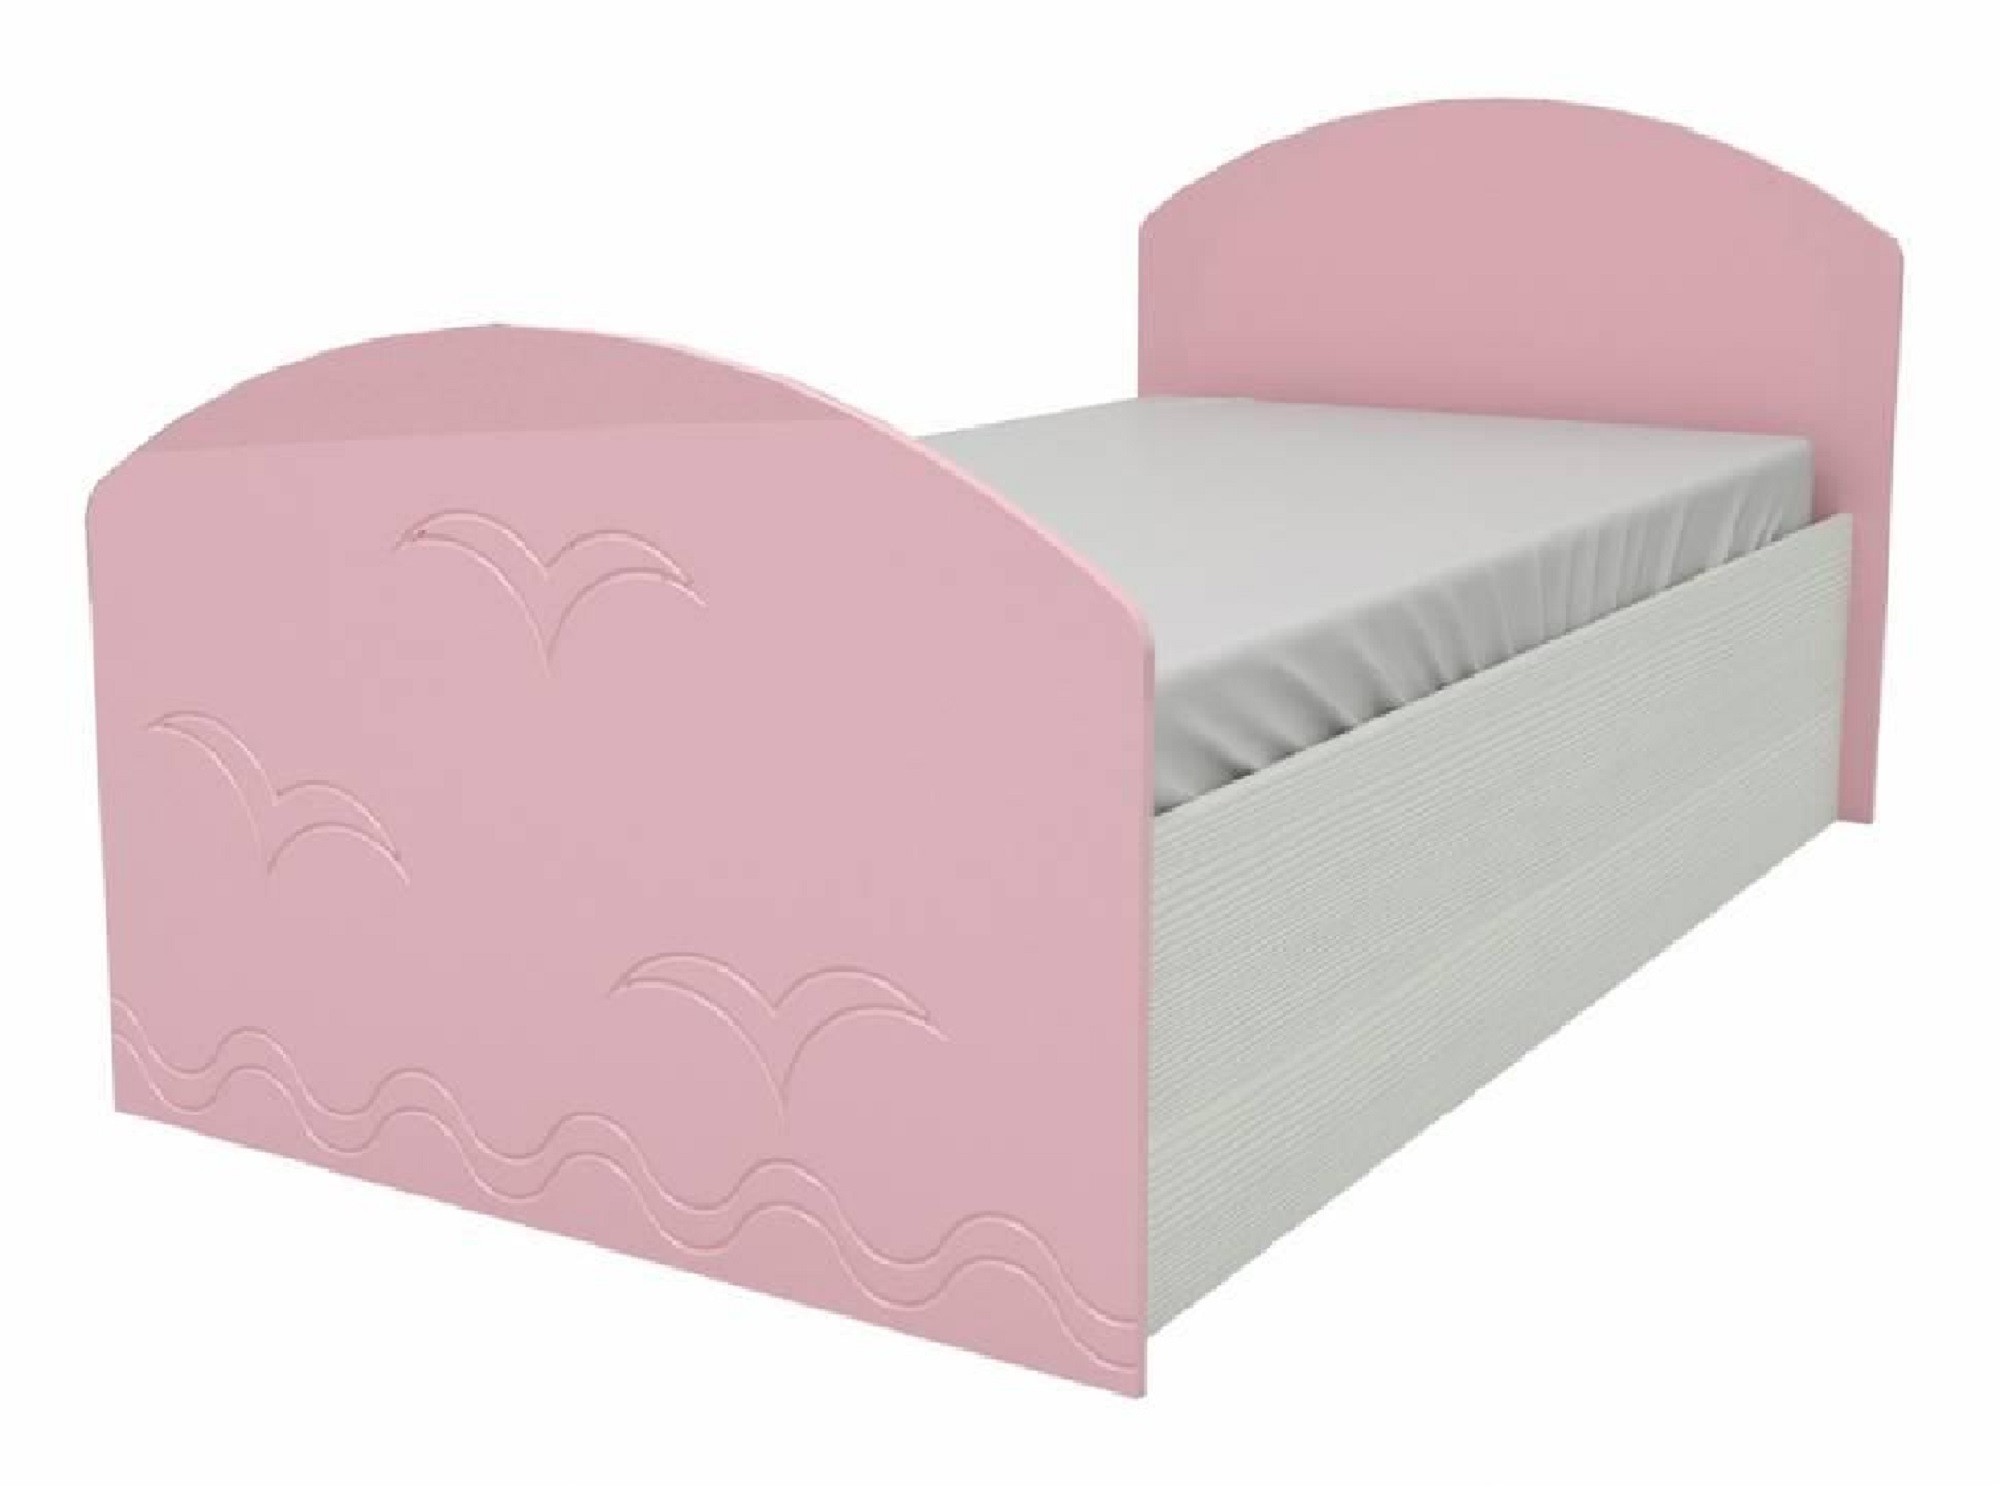 Юниор-2 Детская кровать 80, металлик (Розовый металлик, Дуб белёный) Розовый металлик, МДФ, ЛДСП юниор 2 комод металлик розовый металлик дуб белёный дуб белёный мдф лдсп